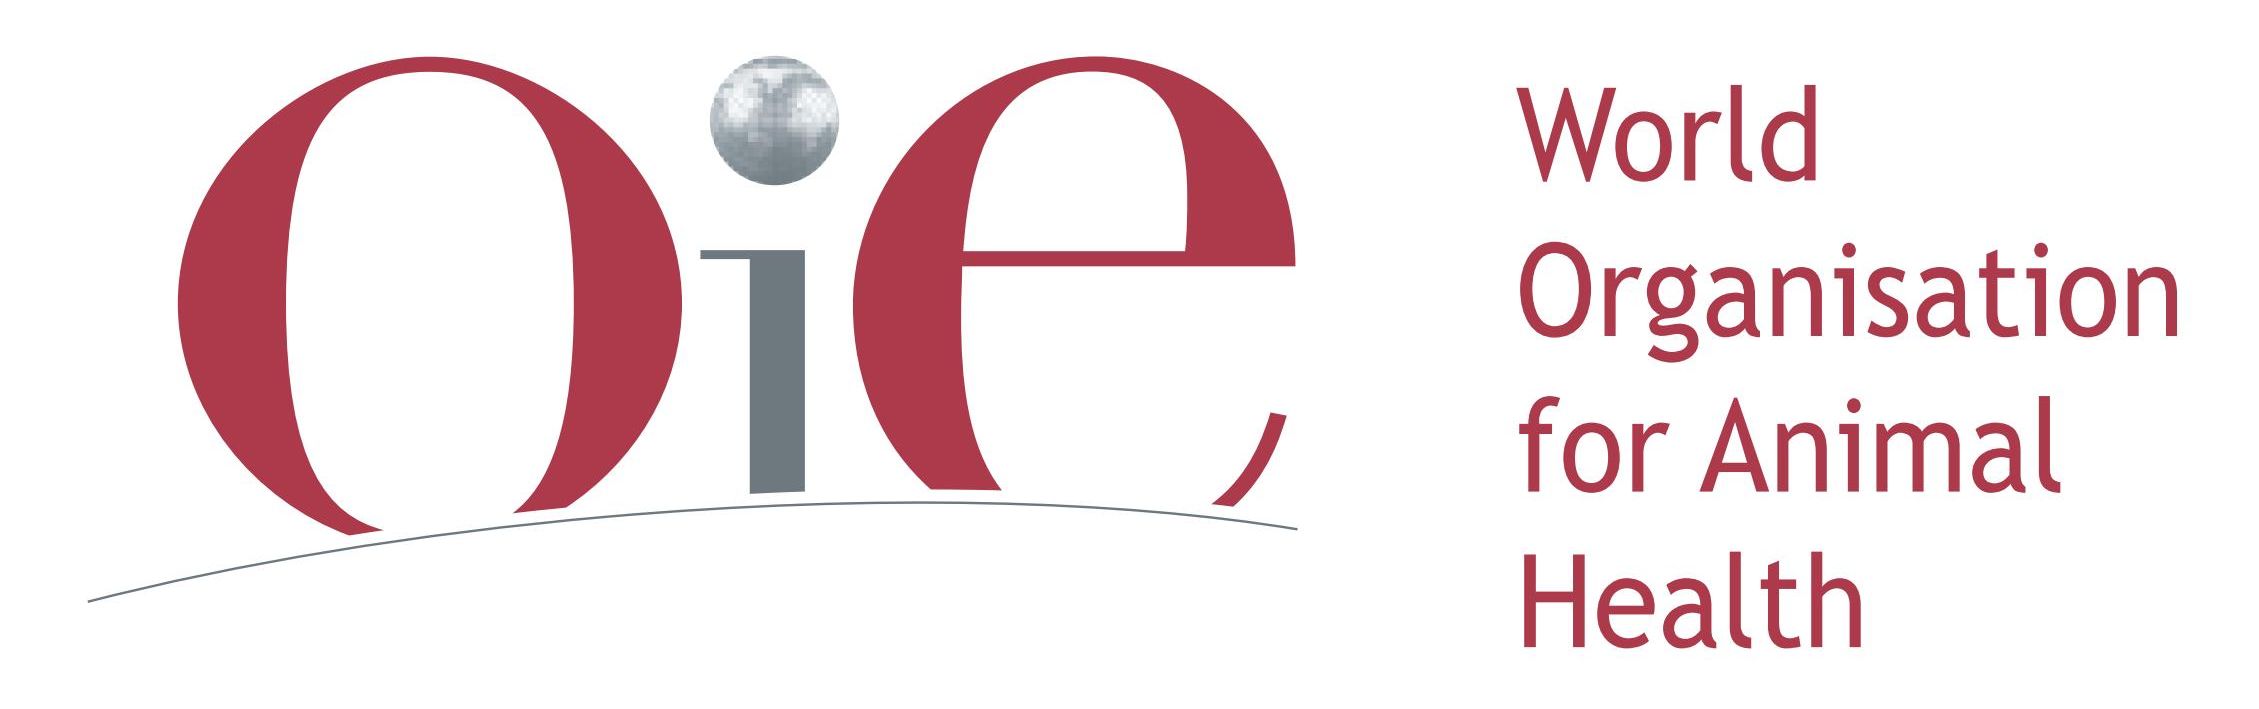 OIE - World Organisation for Animal Health Logo [oie.int]